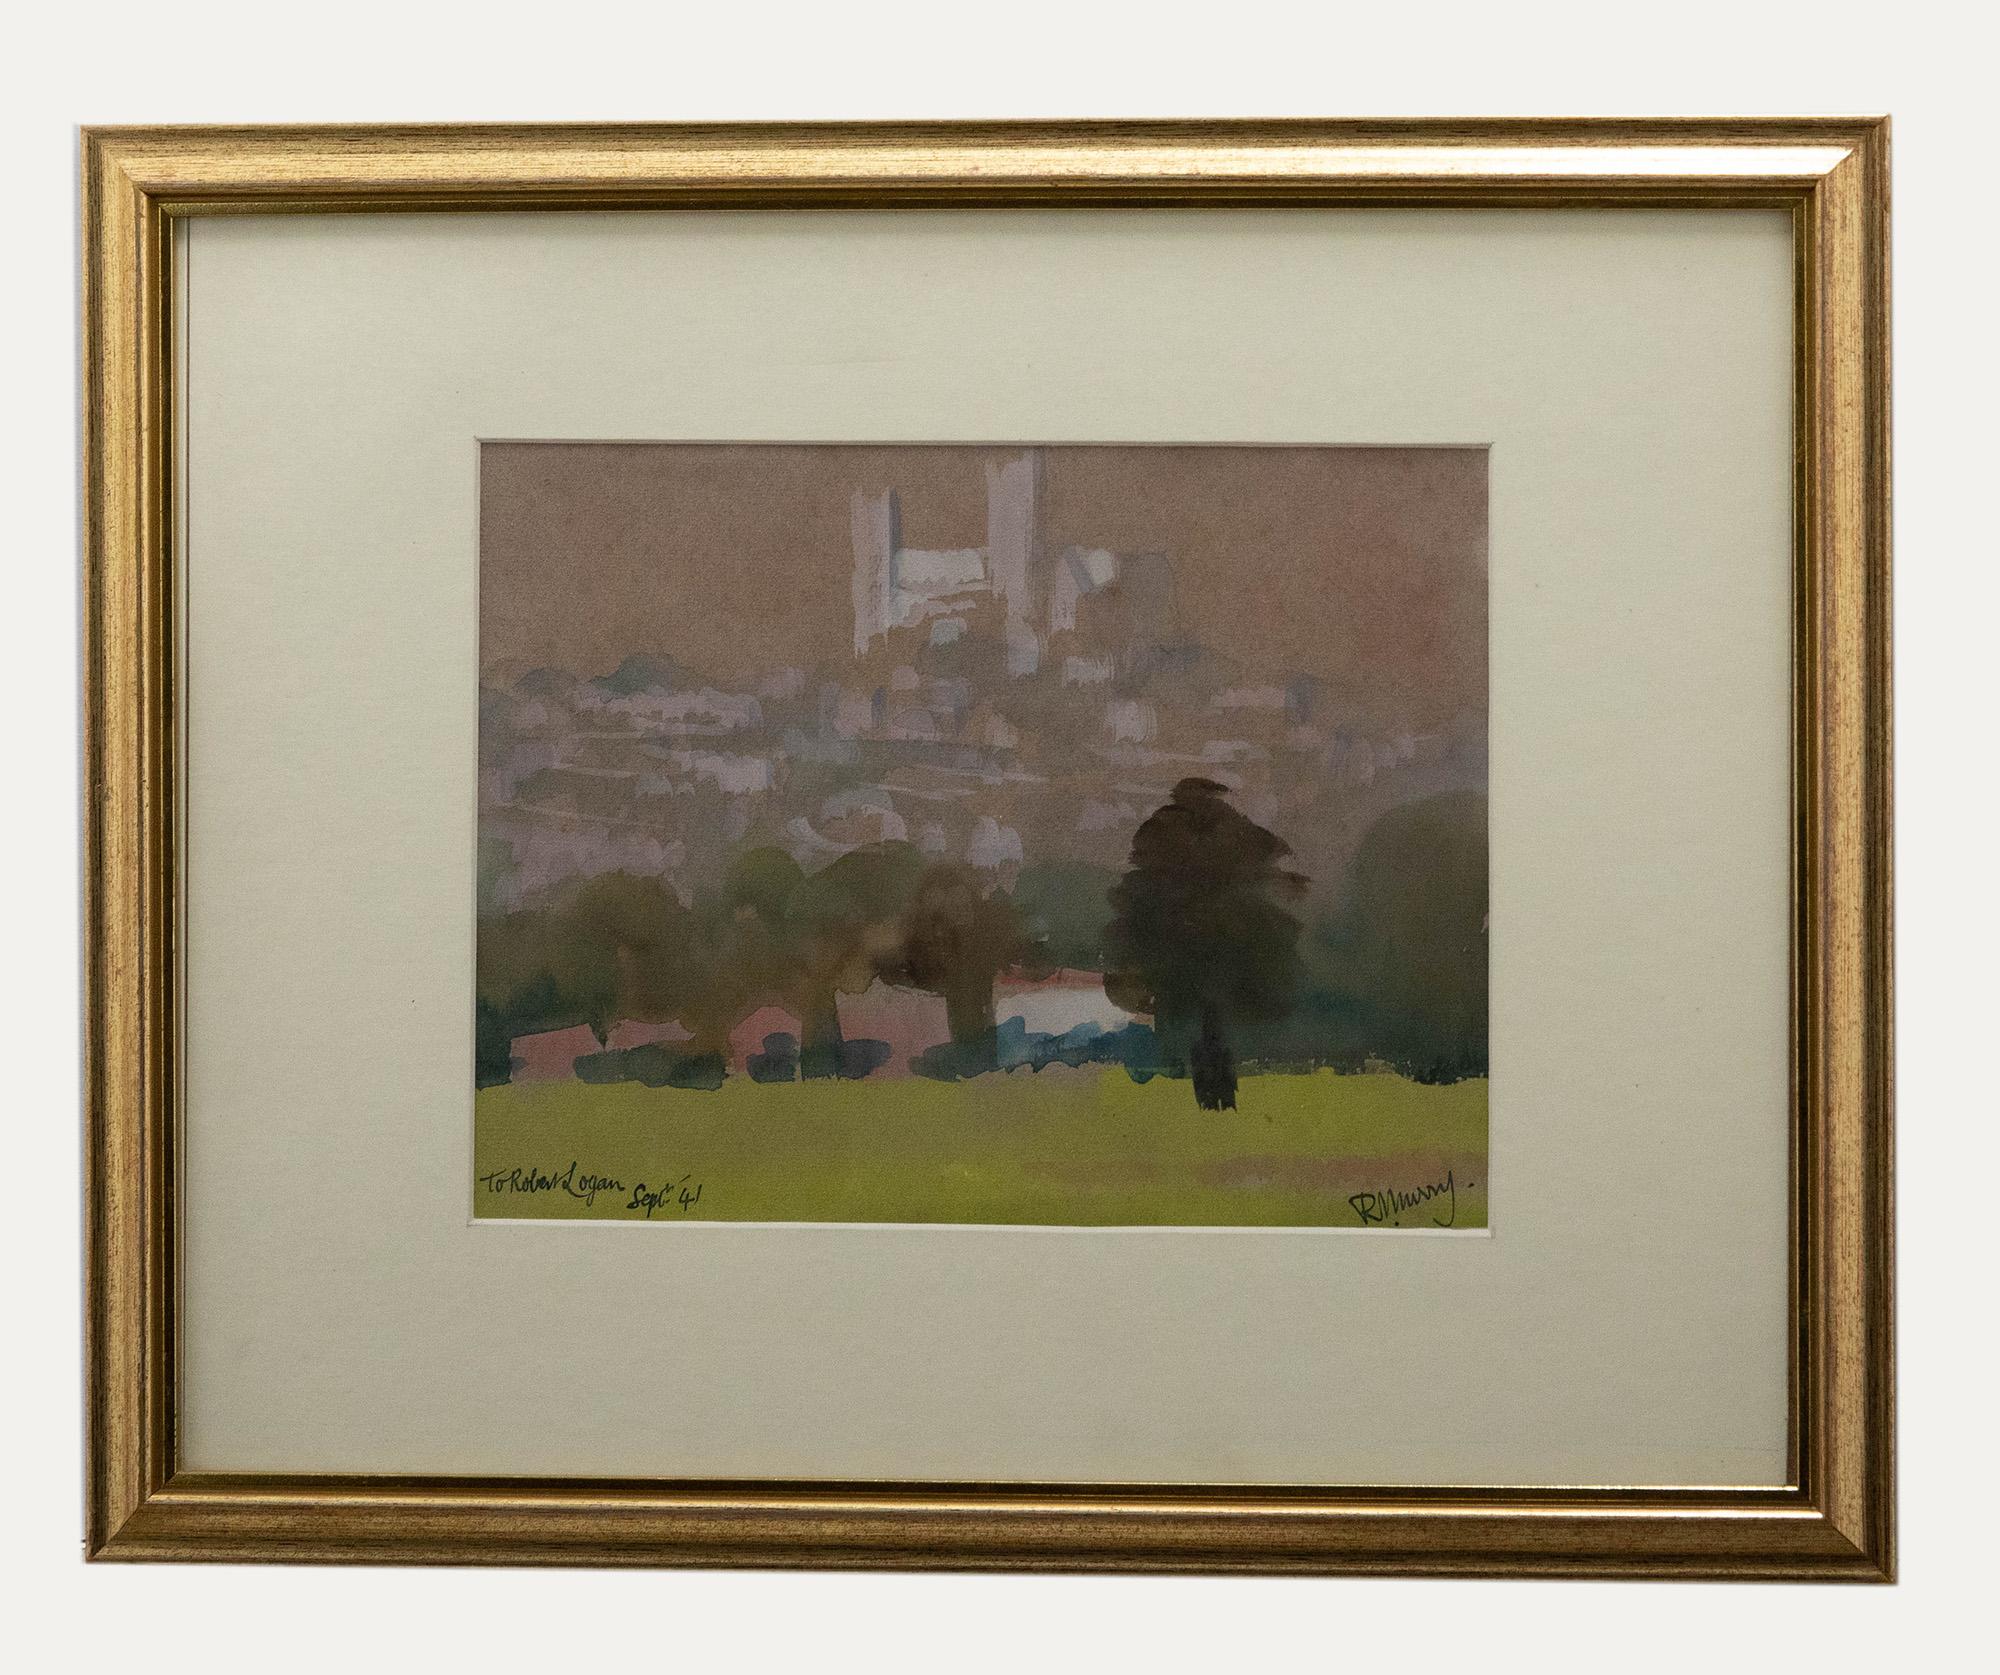 Eine impressionistische Originalstudie von Richard Murray, die Bäume in einer Parklandschaft vor einer Stadt und einer großen Kathedrale zeigt. Unten links mit der Inschrift "To Robert Logan, September 41". Präsentiert in einem eleganten Rahmen mit